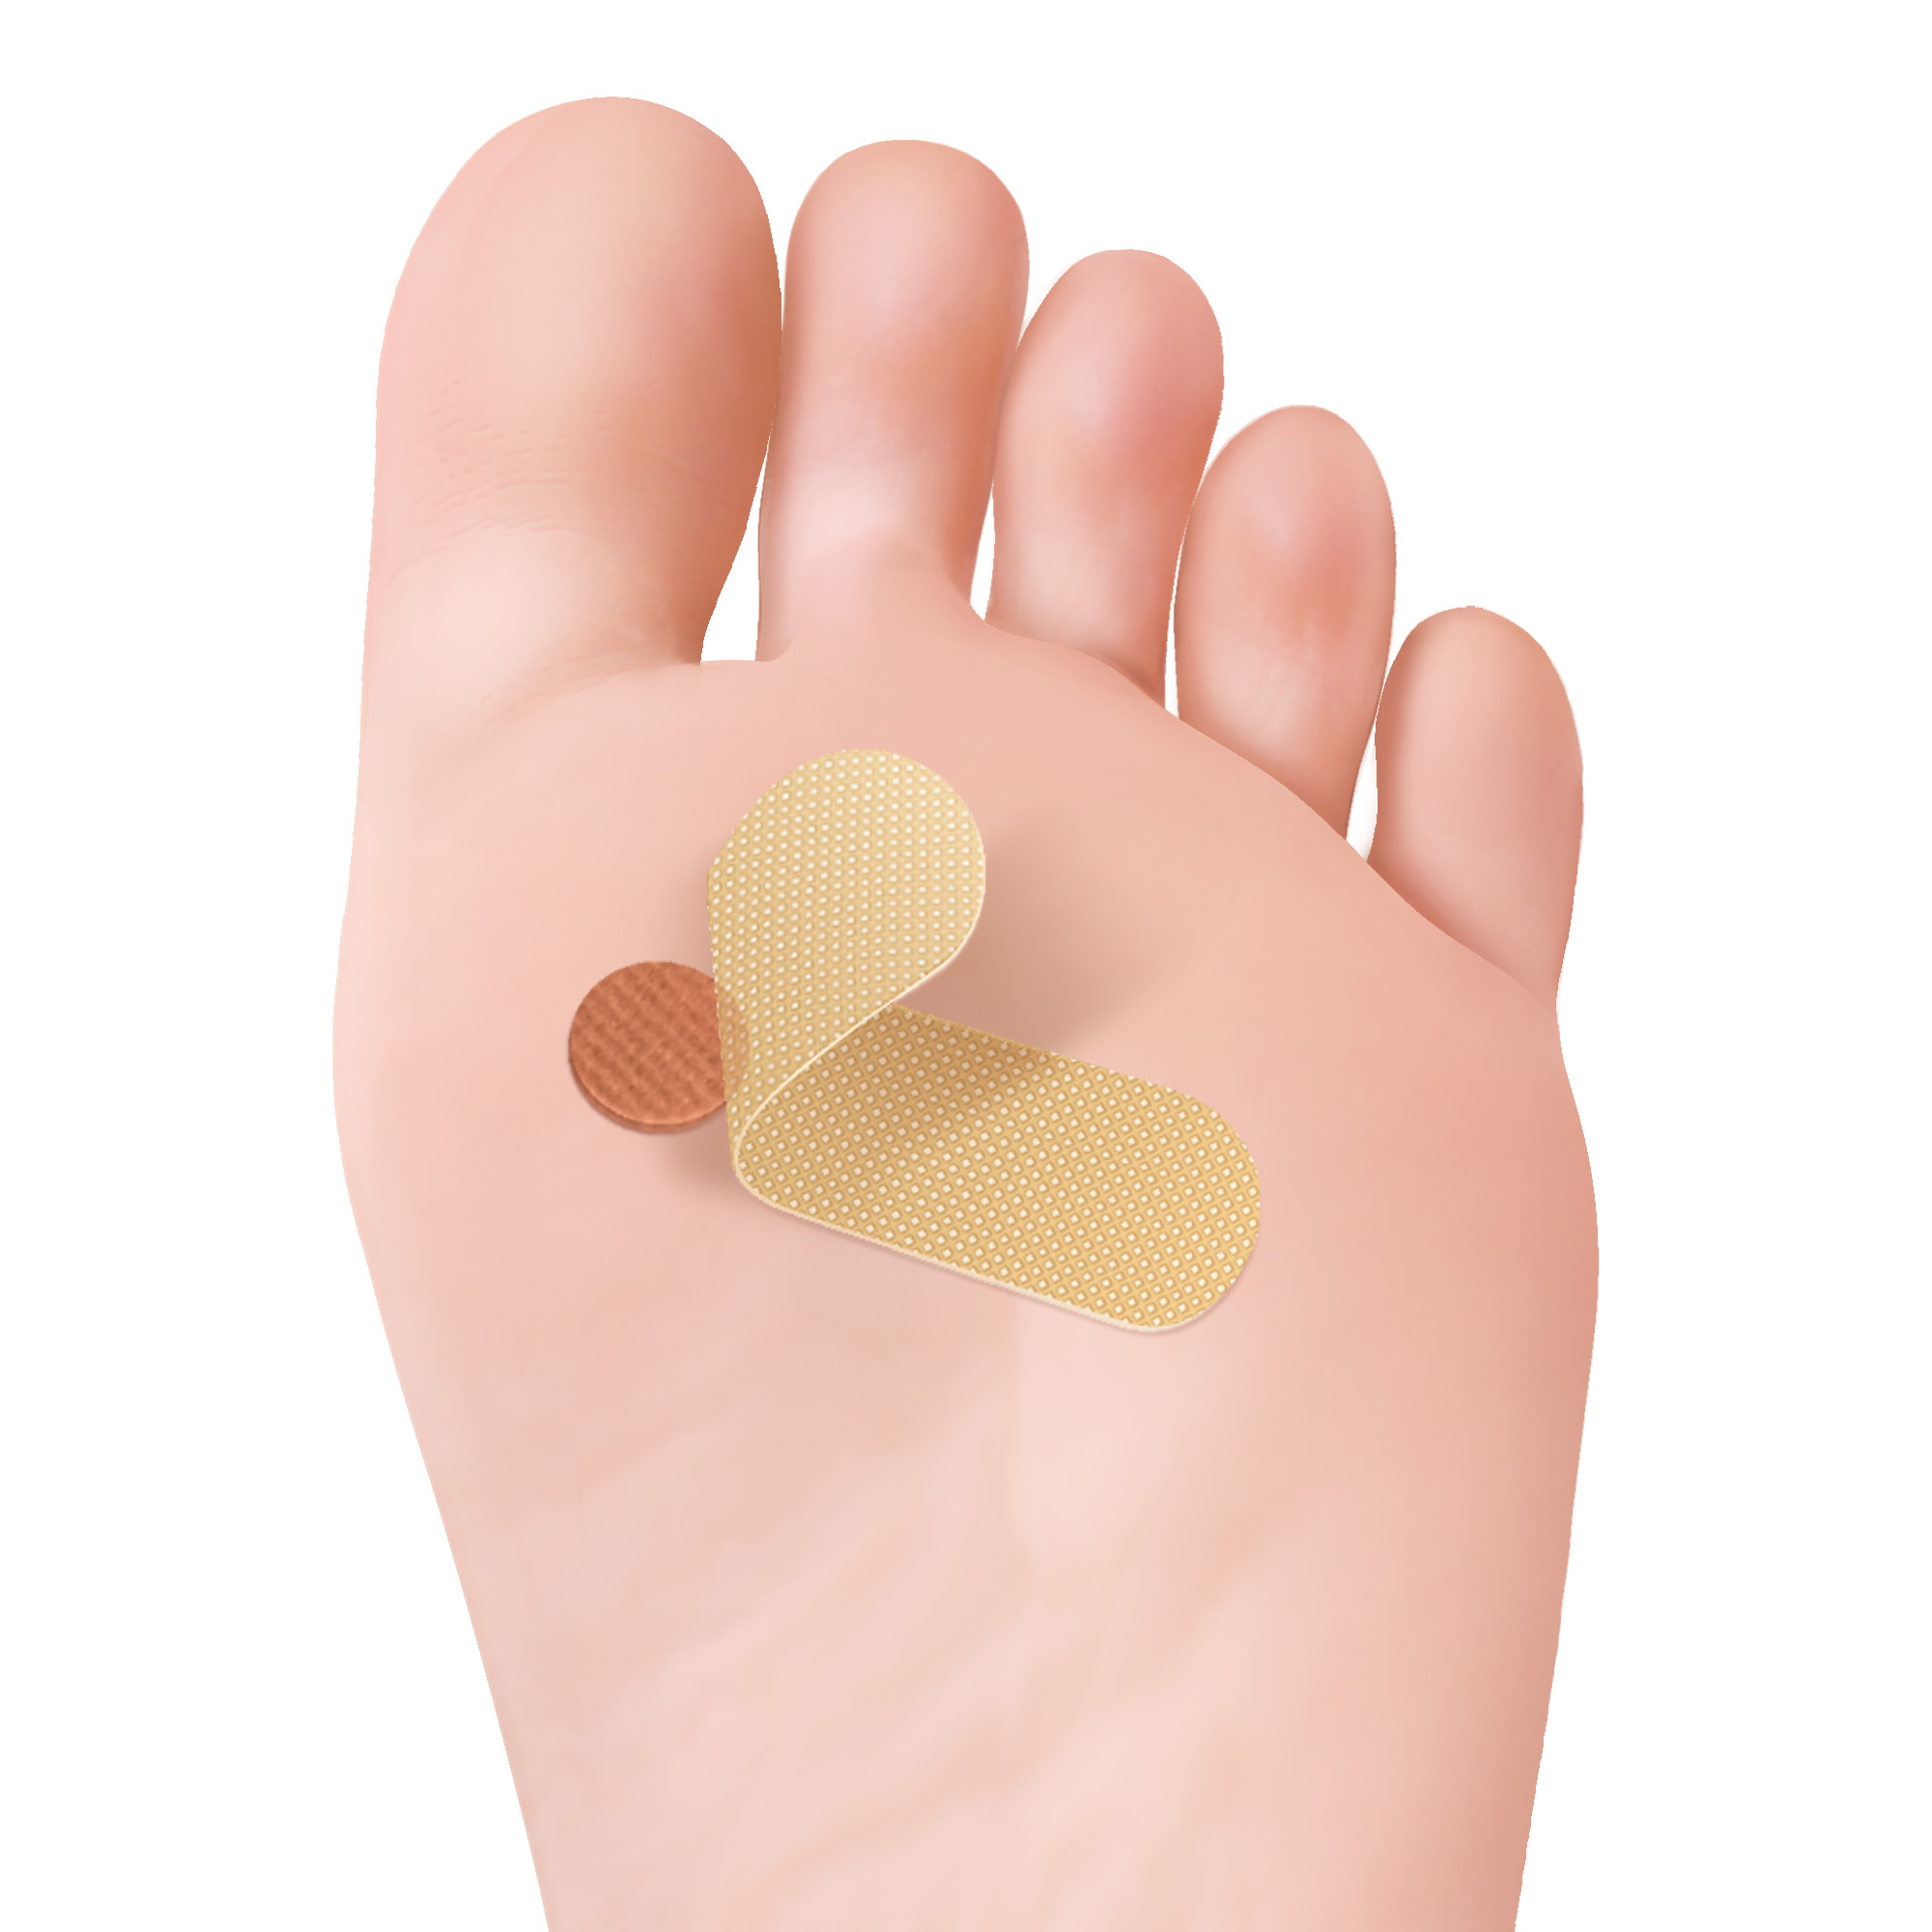 Pansements anti-verrues pour les mains et les pieds avec 40% d'acide salicylique 15 pc